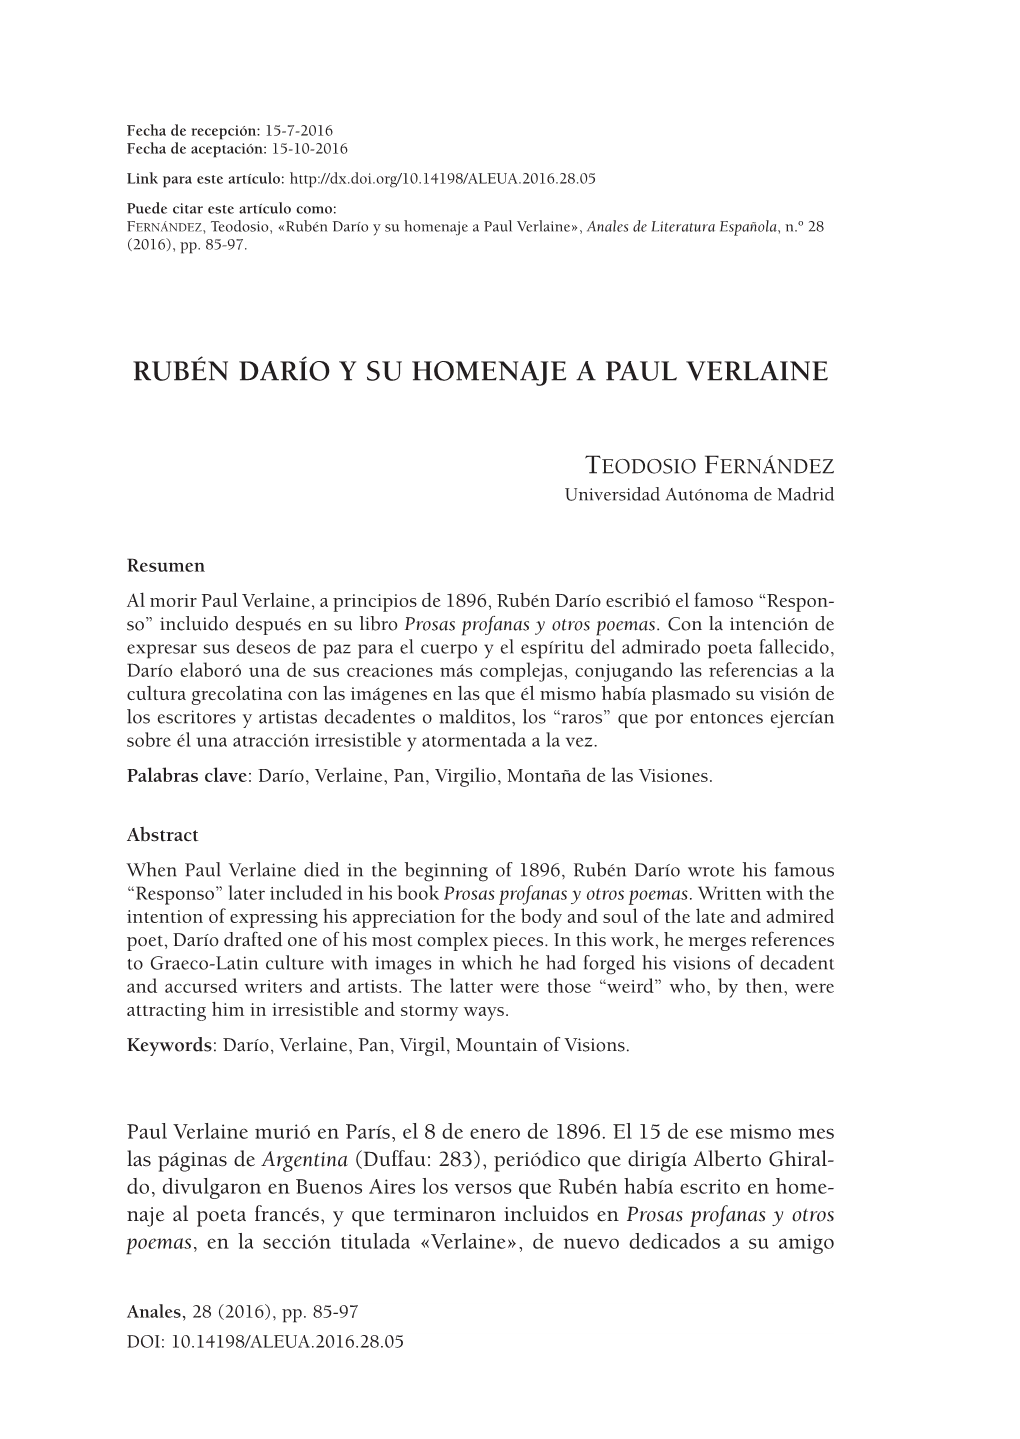 Rubén Darío Y Su Homenaje a Paul Verlaine», Anales De Literatura Española, N.º 28 (2016), Pp